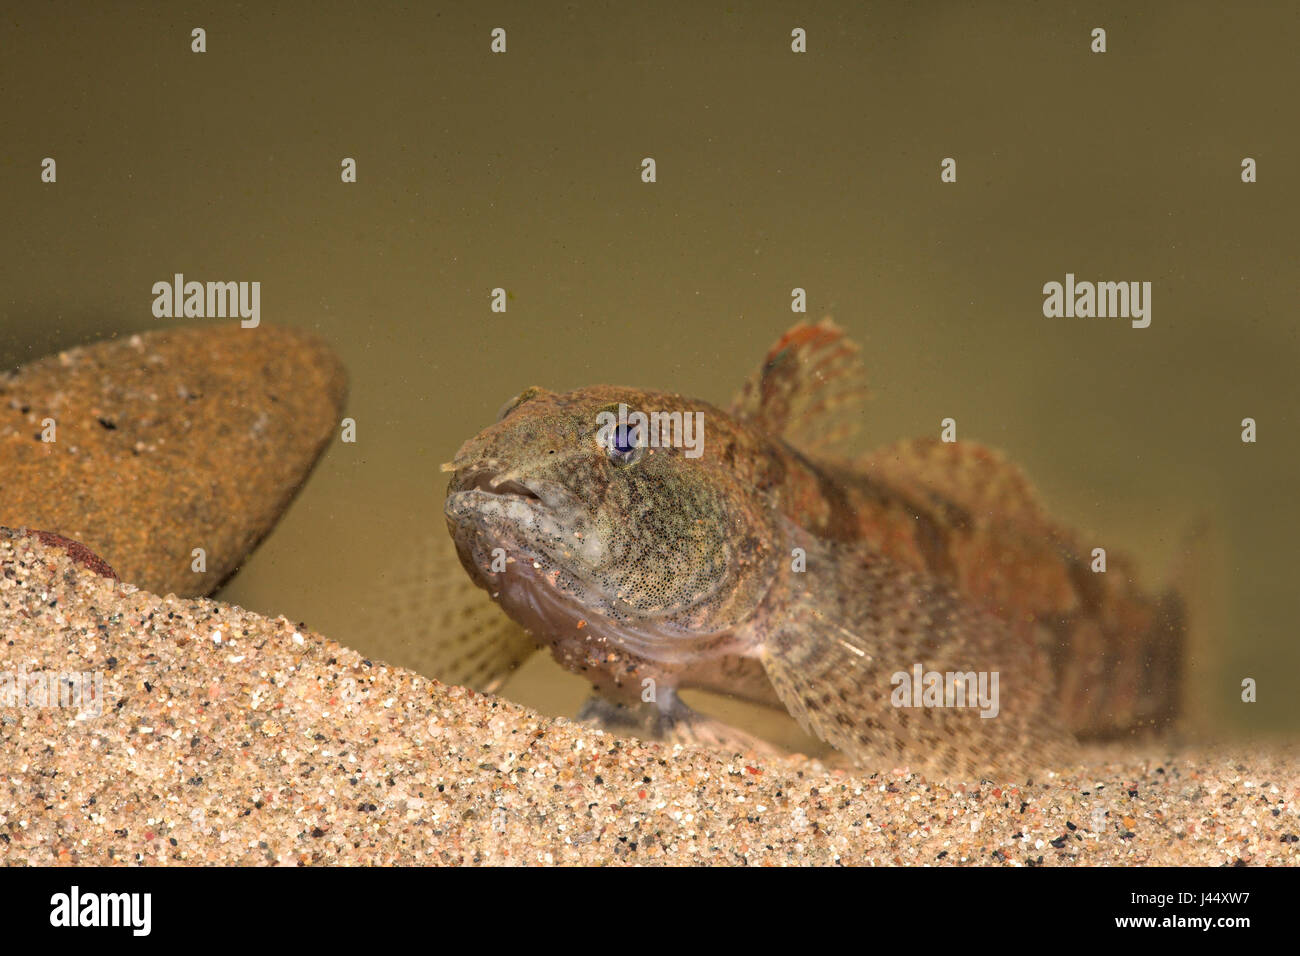 tubenose goby lying on sand Stock Photo